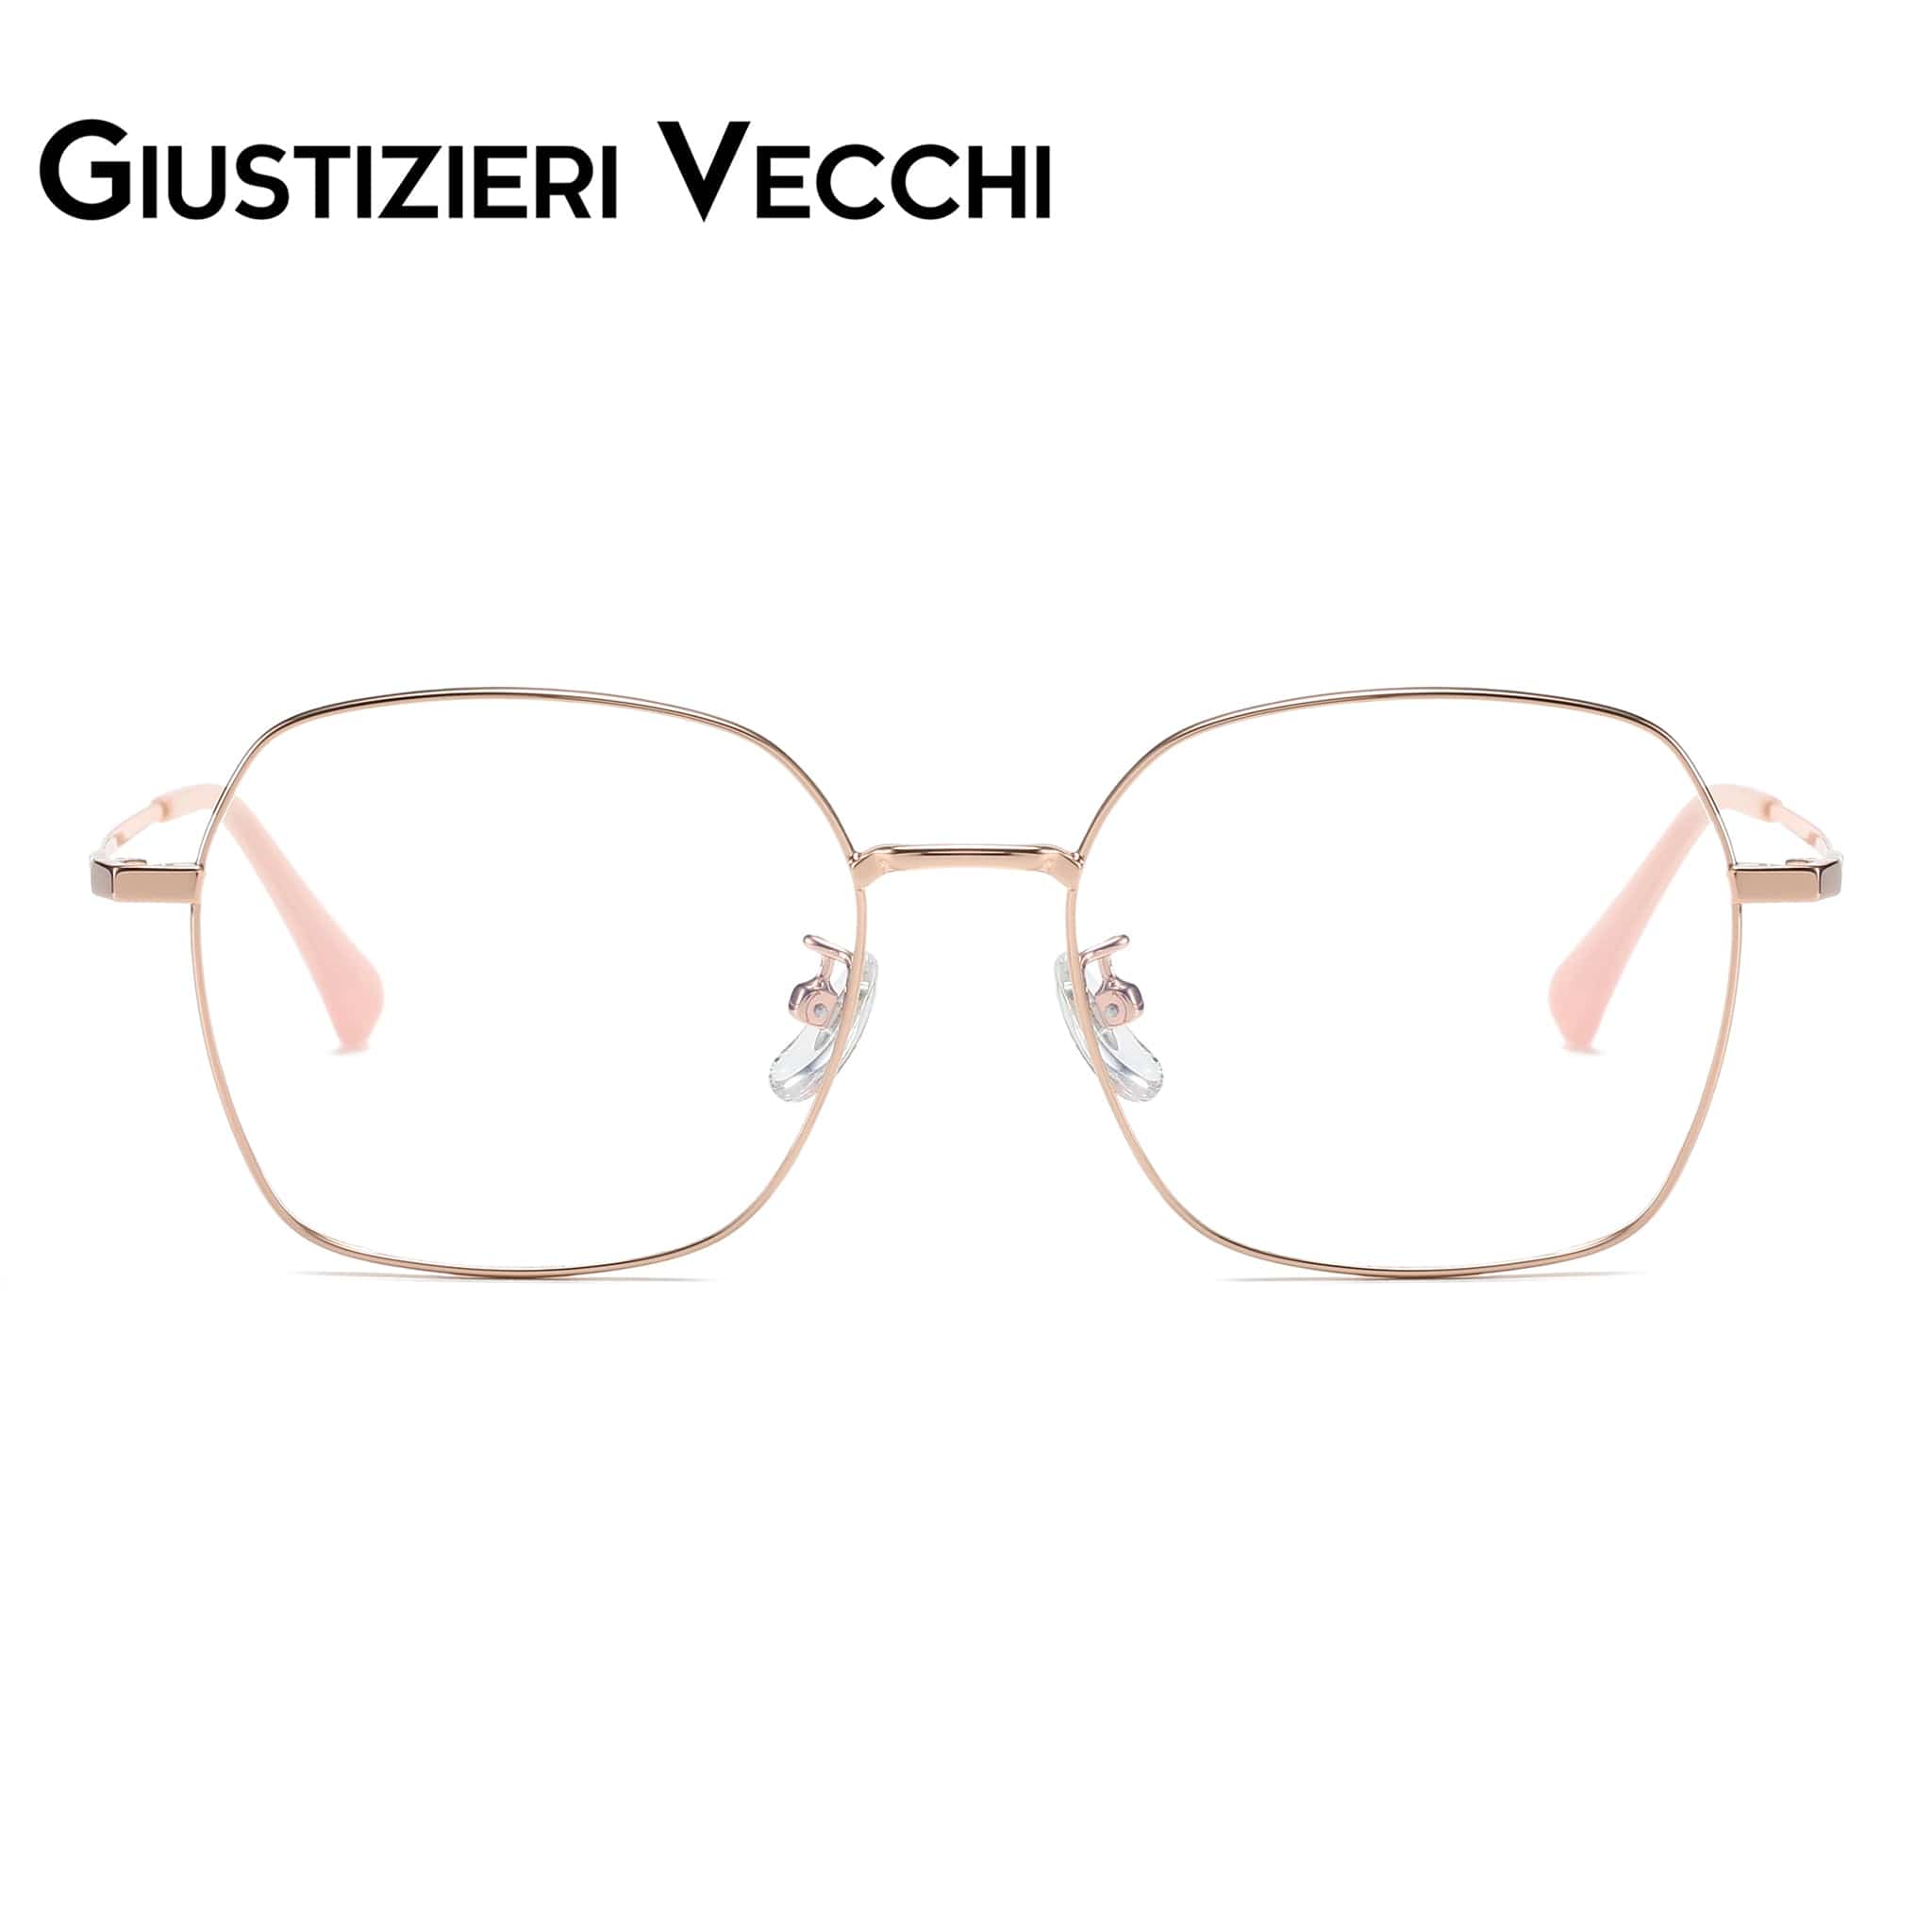 GIUSTIZIERI VECCHI Eyeglasses Small / Rose Gold Chill Mist Duo